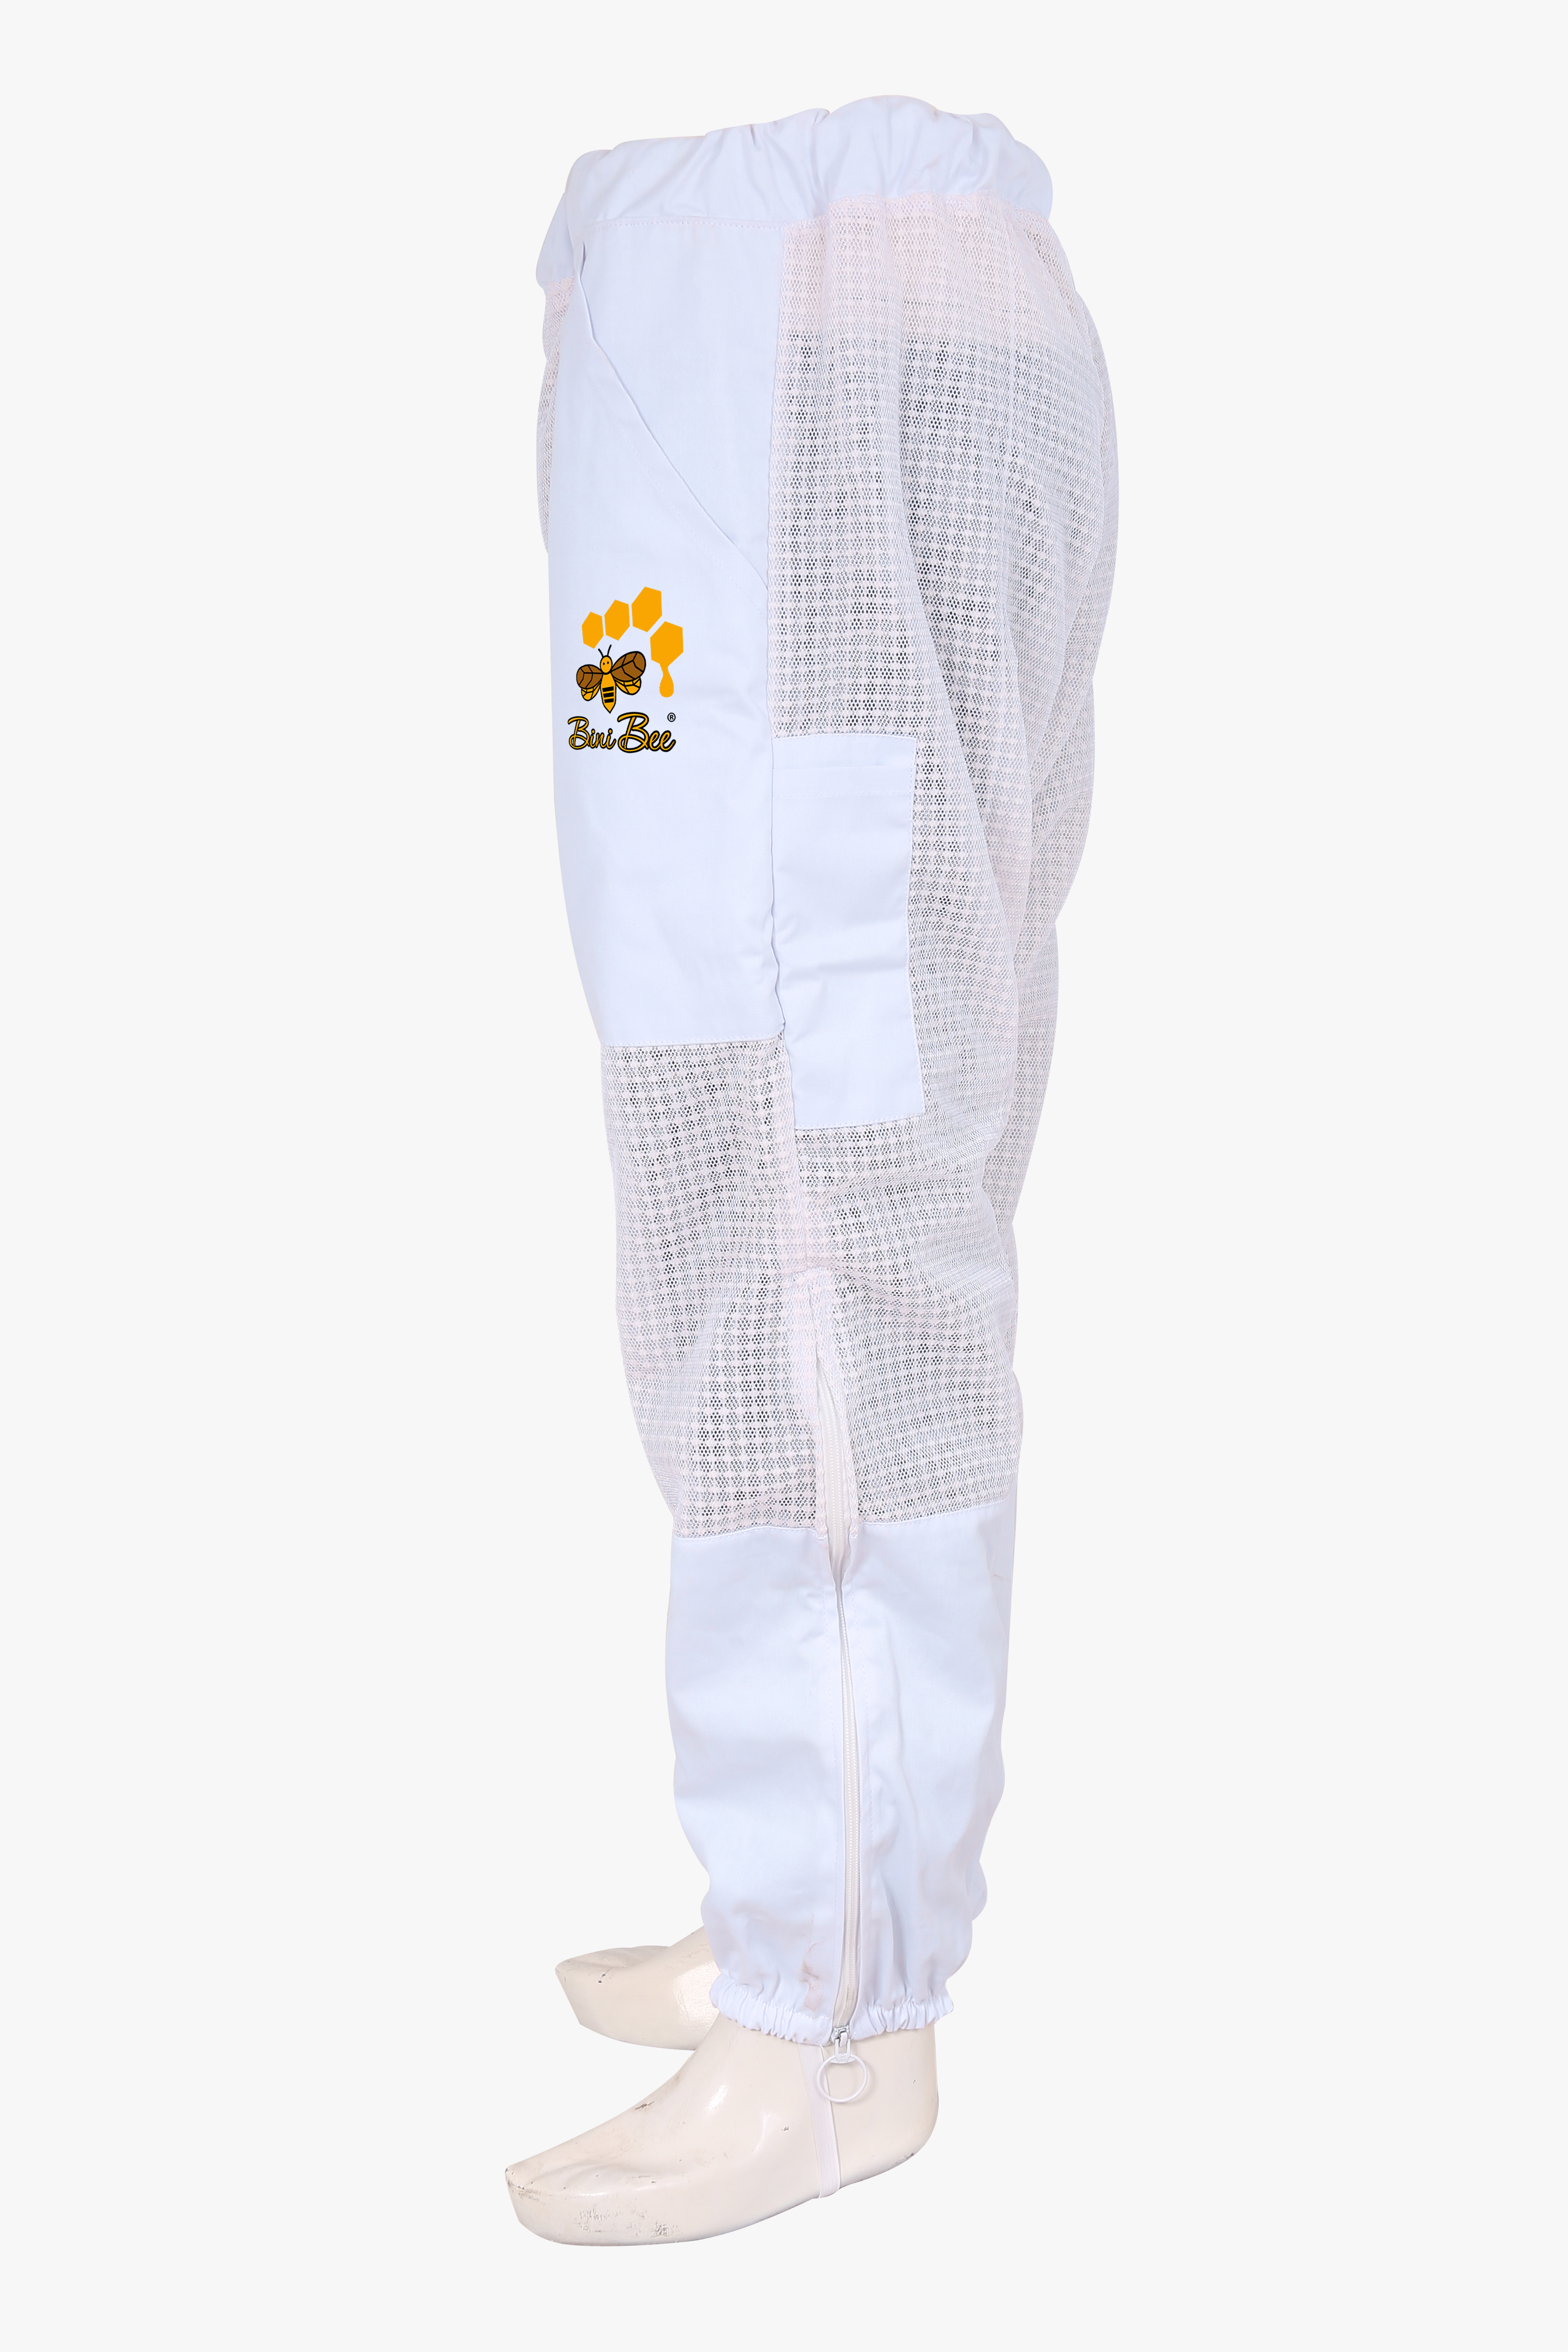 Beekeeping Bee Trouser 3 Layer Ultra-Cool Mesh Ventilated Bini Bee